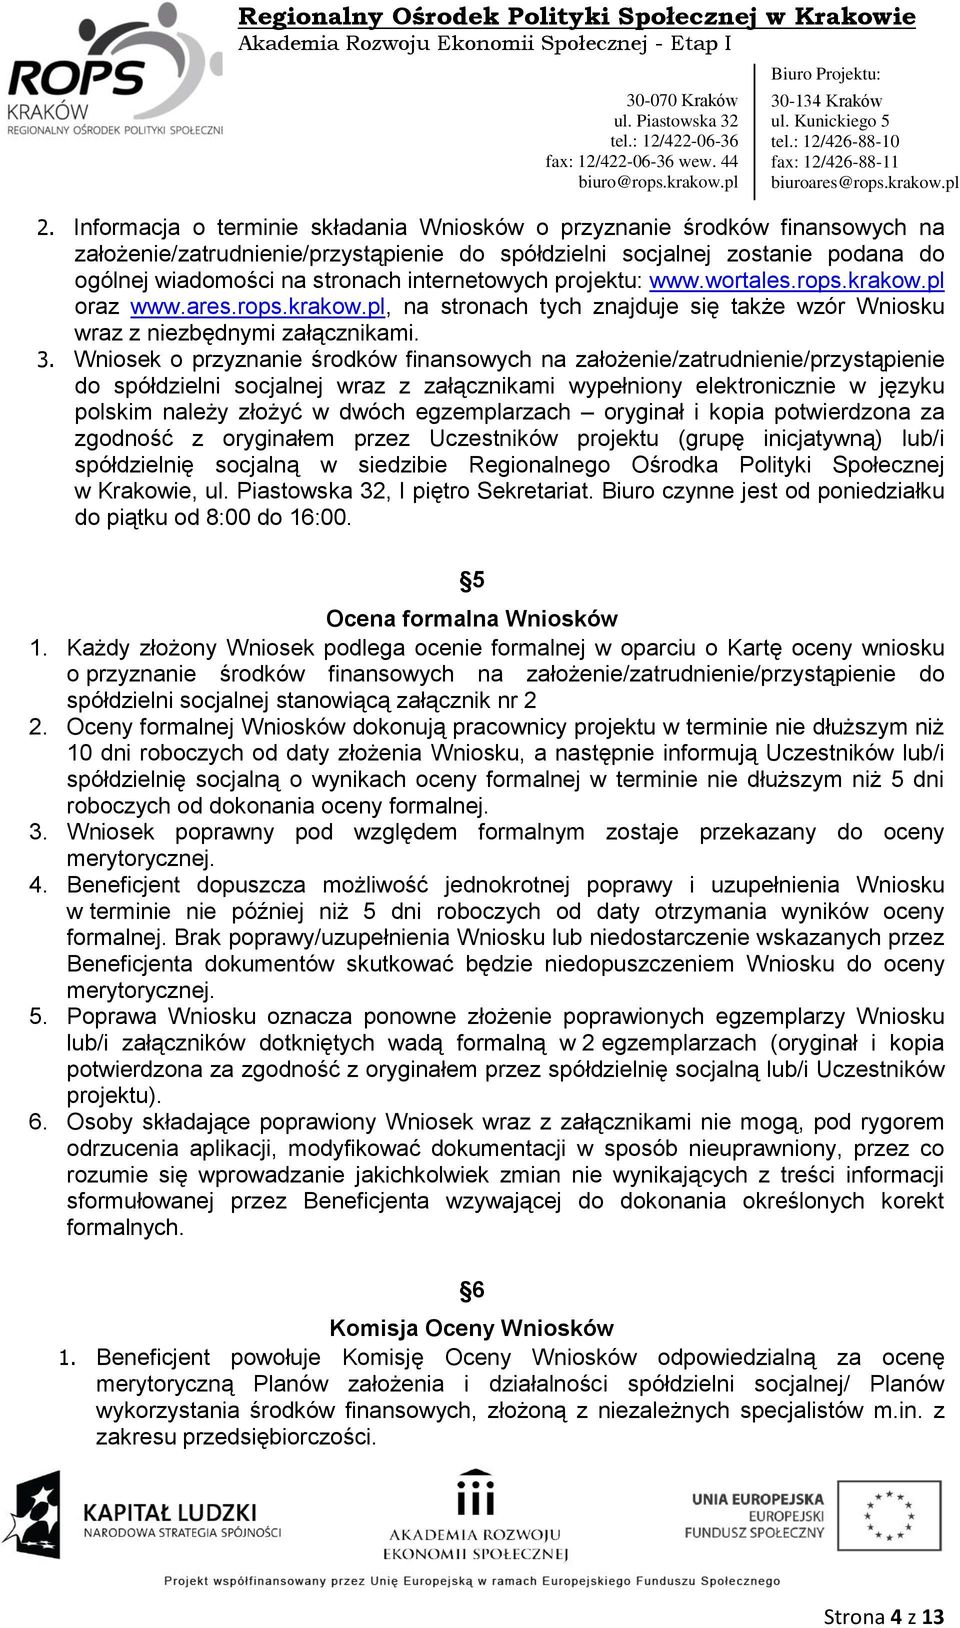 Wniosek o przyznanie środków finansowych na założenie/zatrudnienie/przystąpienie do spółdzielni socjalnej wraz z załącznikami wypełniony elektronicznie w języku polskim należy złożyć w dwóch